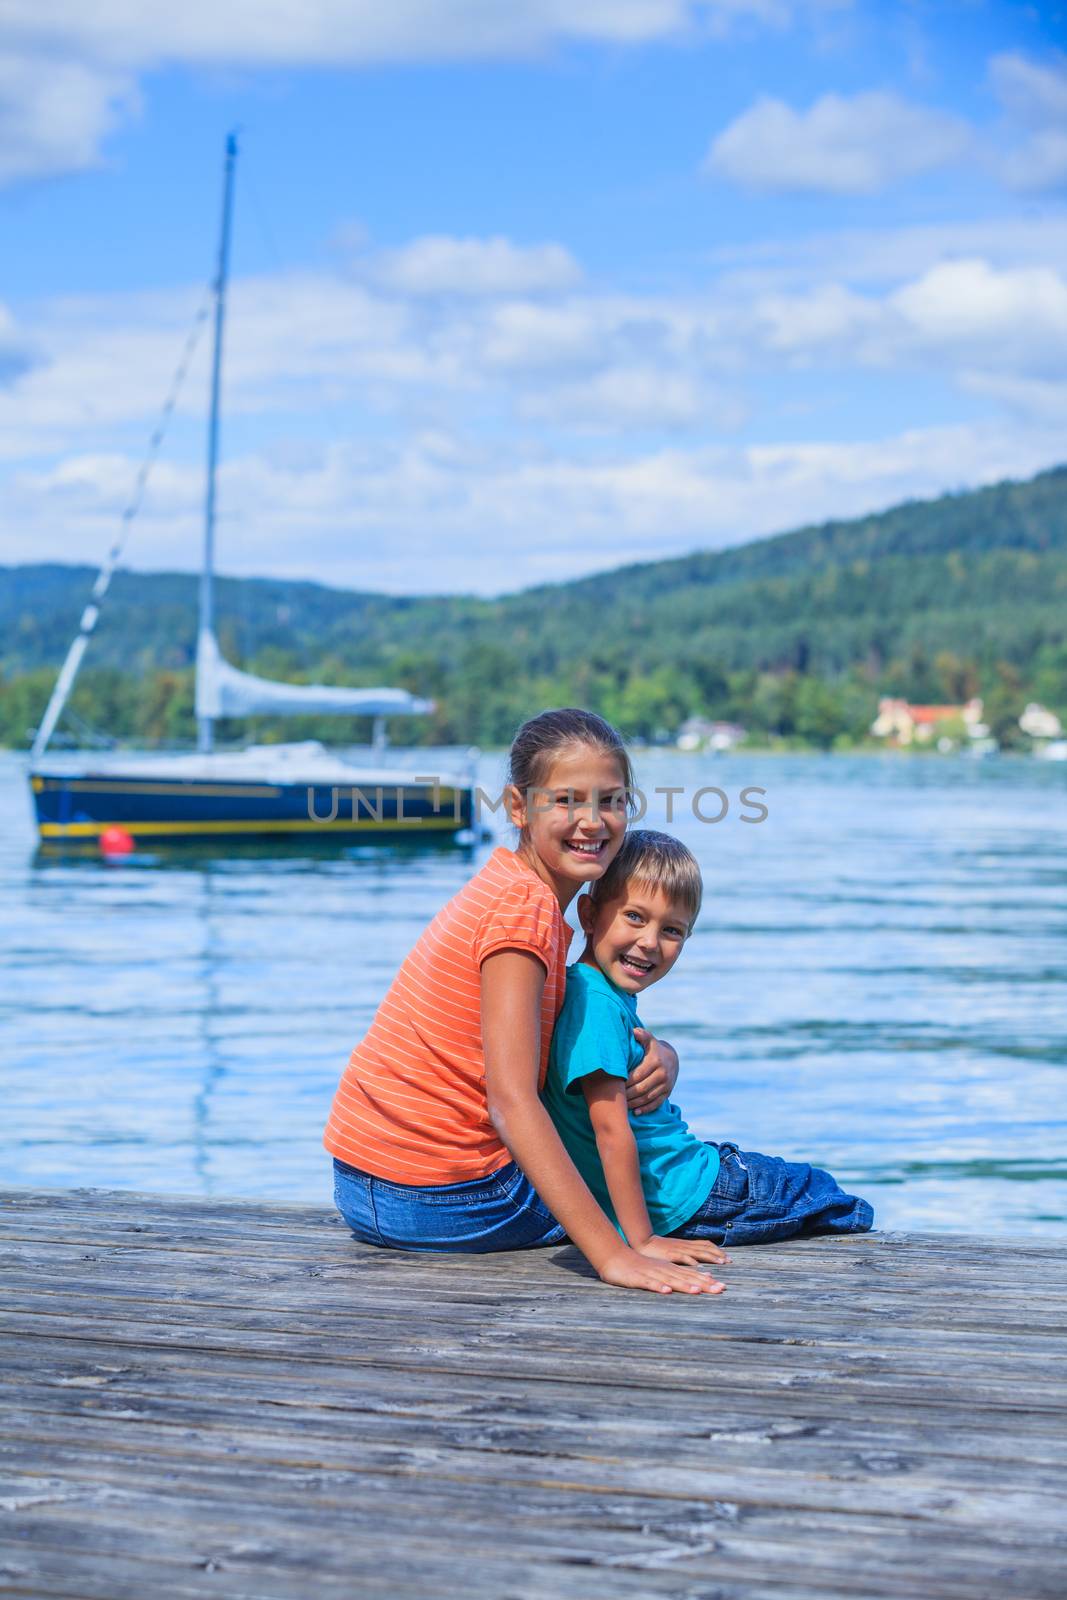 Kids at the lake by maxoliki